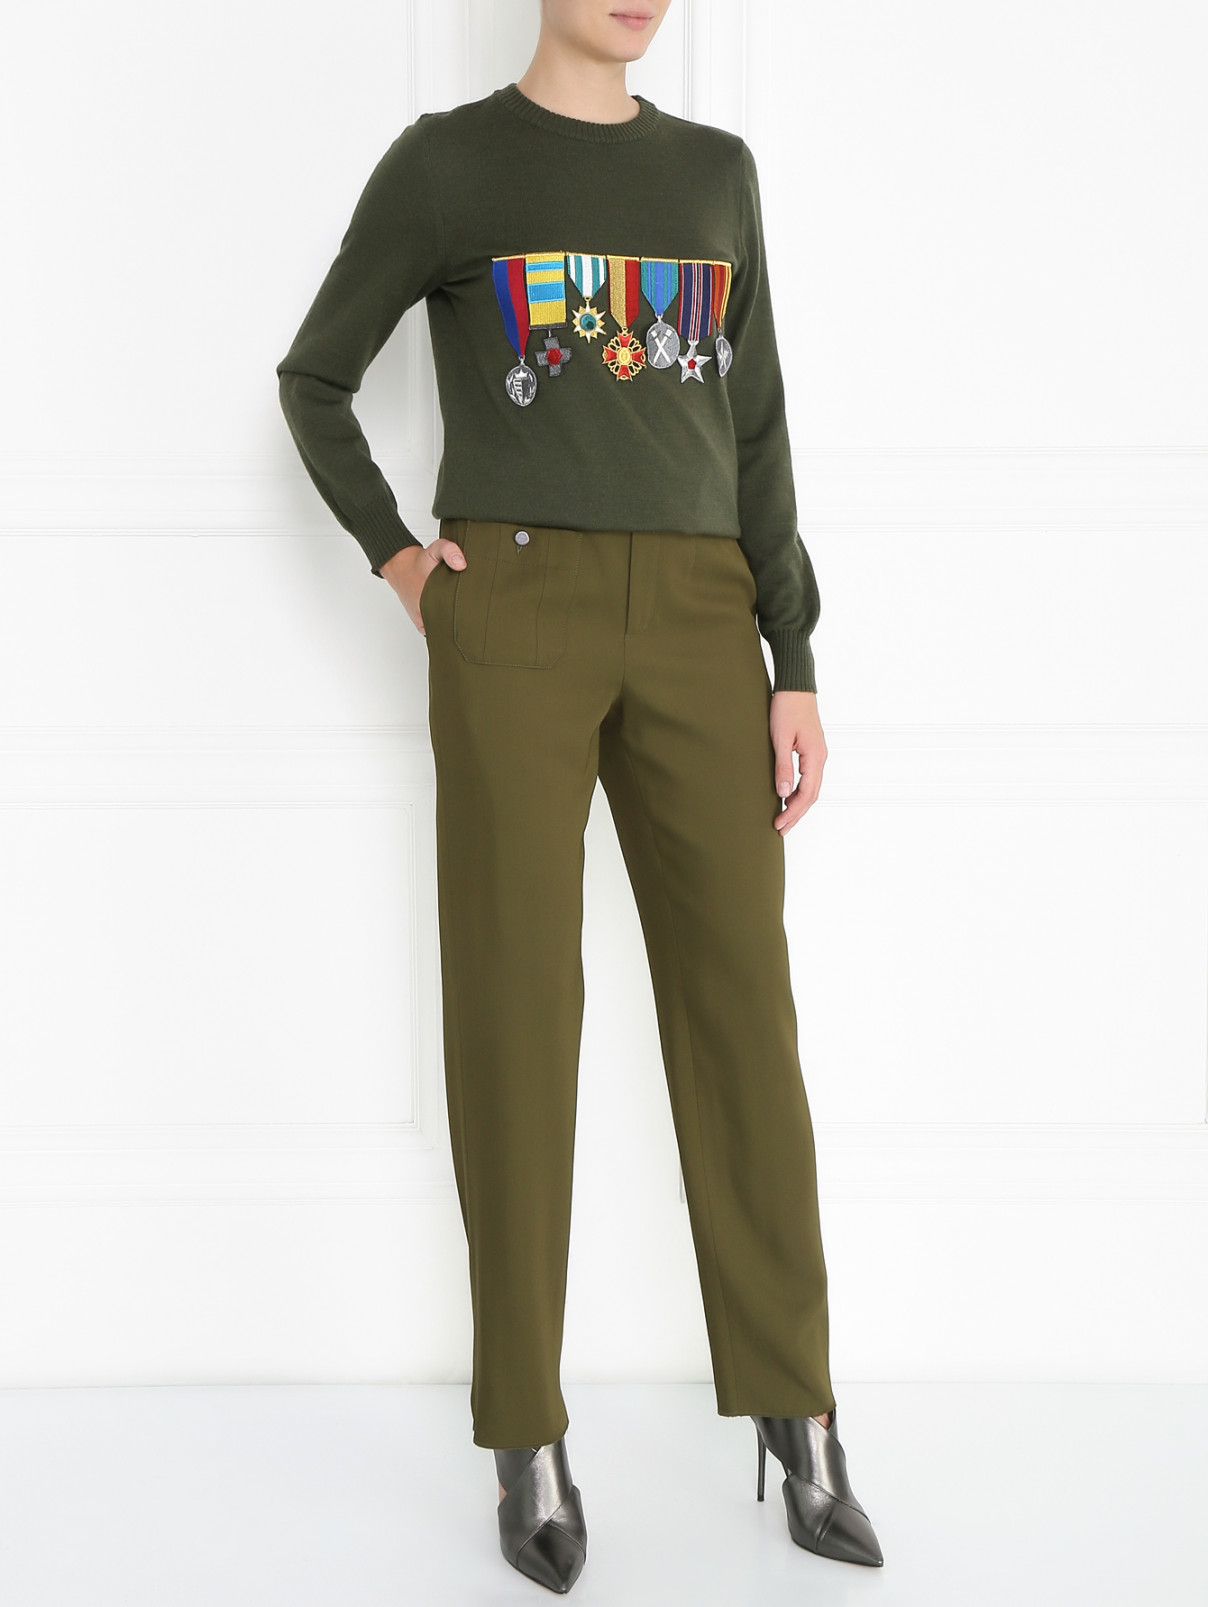 Джемпер из шерсти с декоративной отделкой Stella Jean  –  Модель Общий вид  – Цвет:  Зеленый